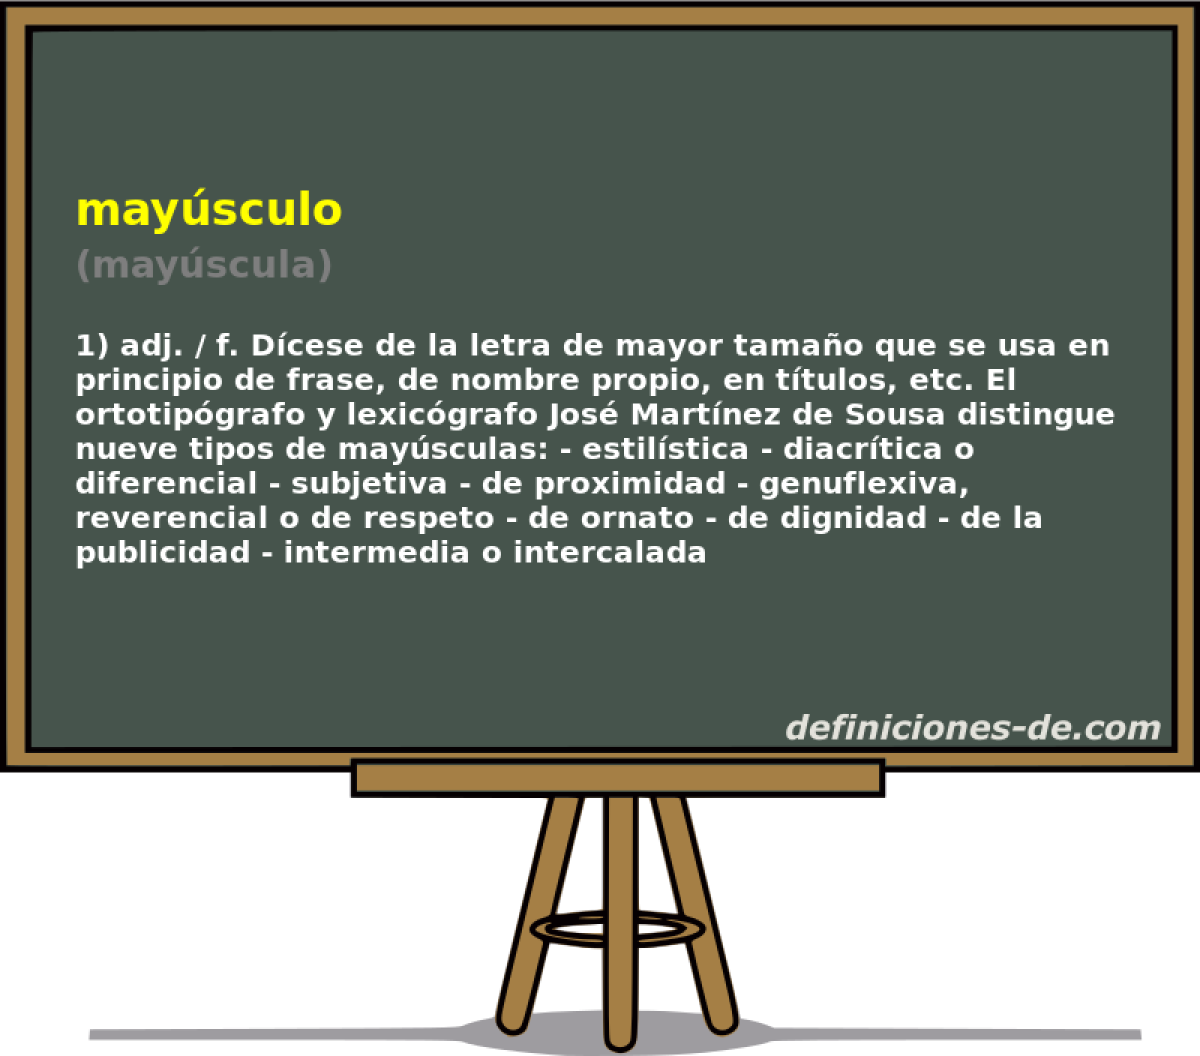 maysculo (mayscula)